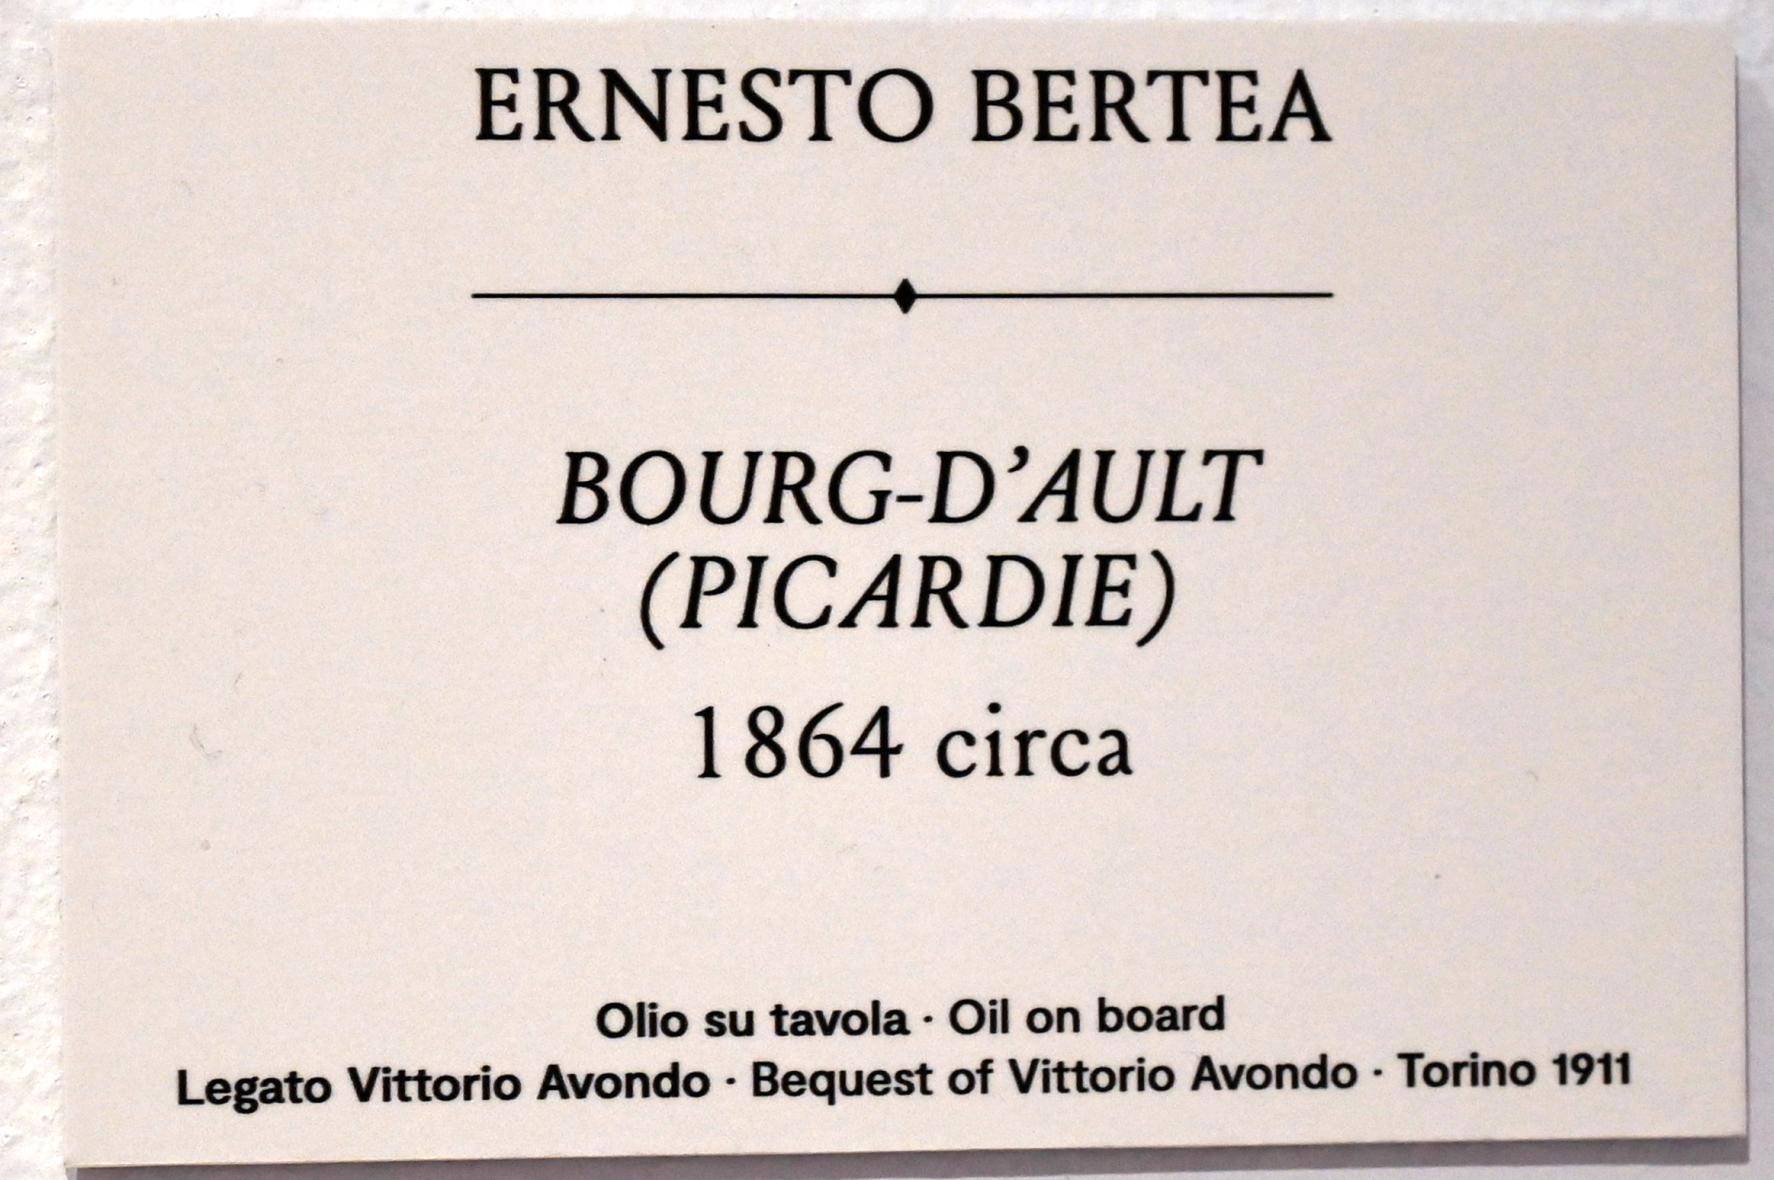 Ernesto Bertea (1864–1868), Bourg d'Ault (Picardie), Turin, GAM Torino, Ausstellung "Natur und Wahrheit" vom 09.07.-17.10.2021, um 1864, Bild 2/2